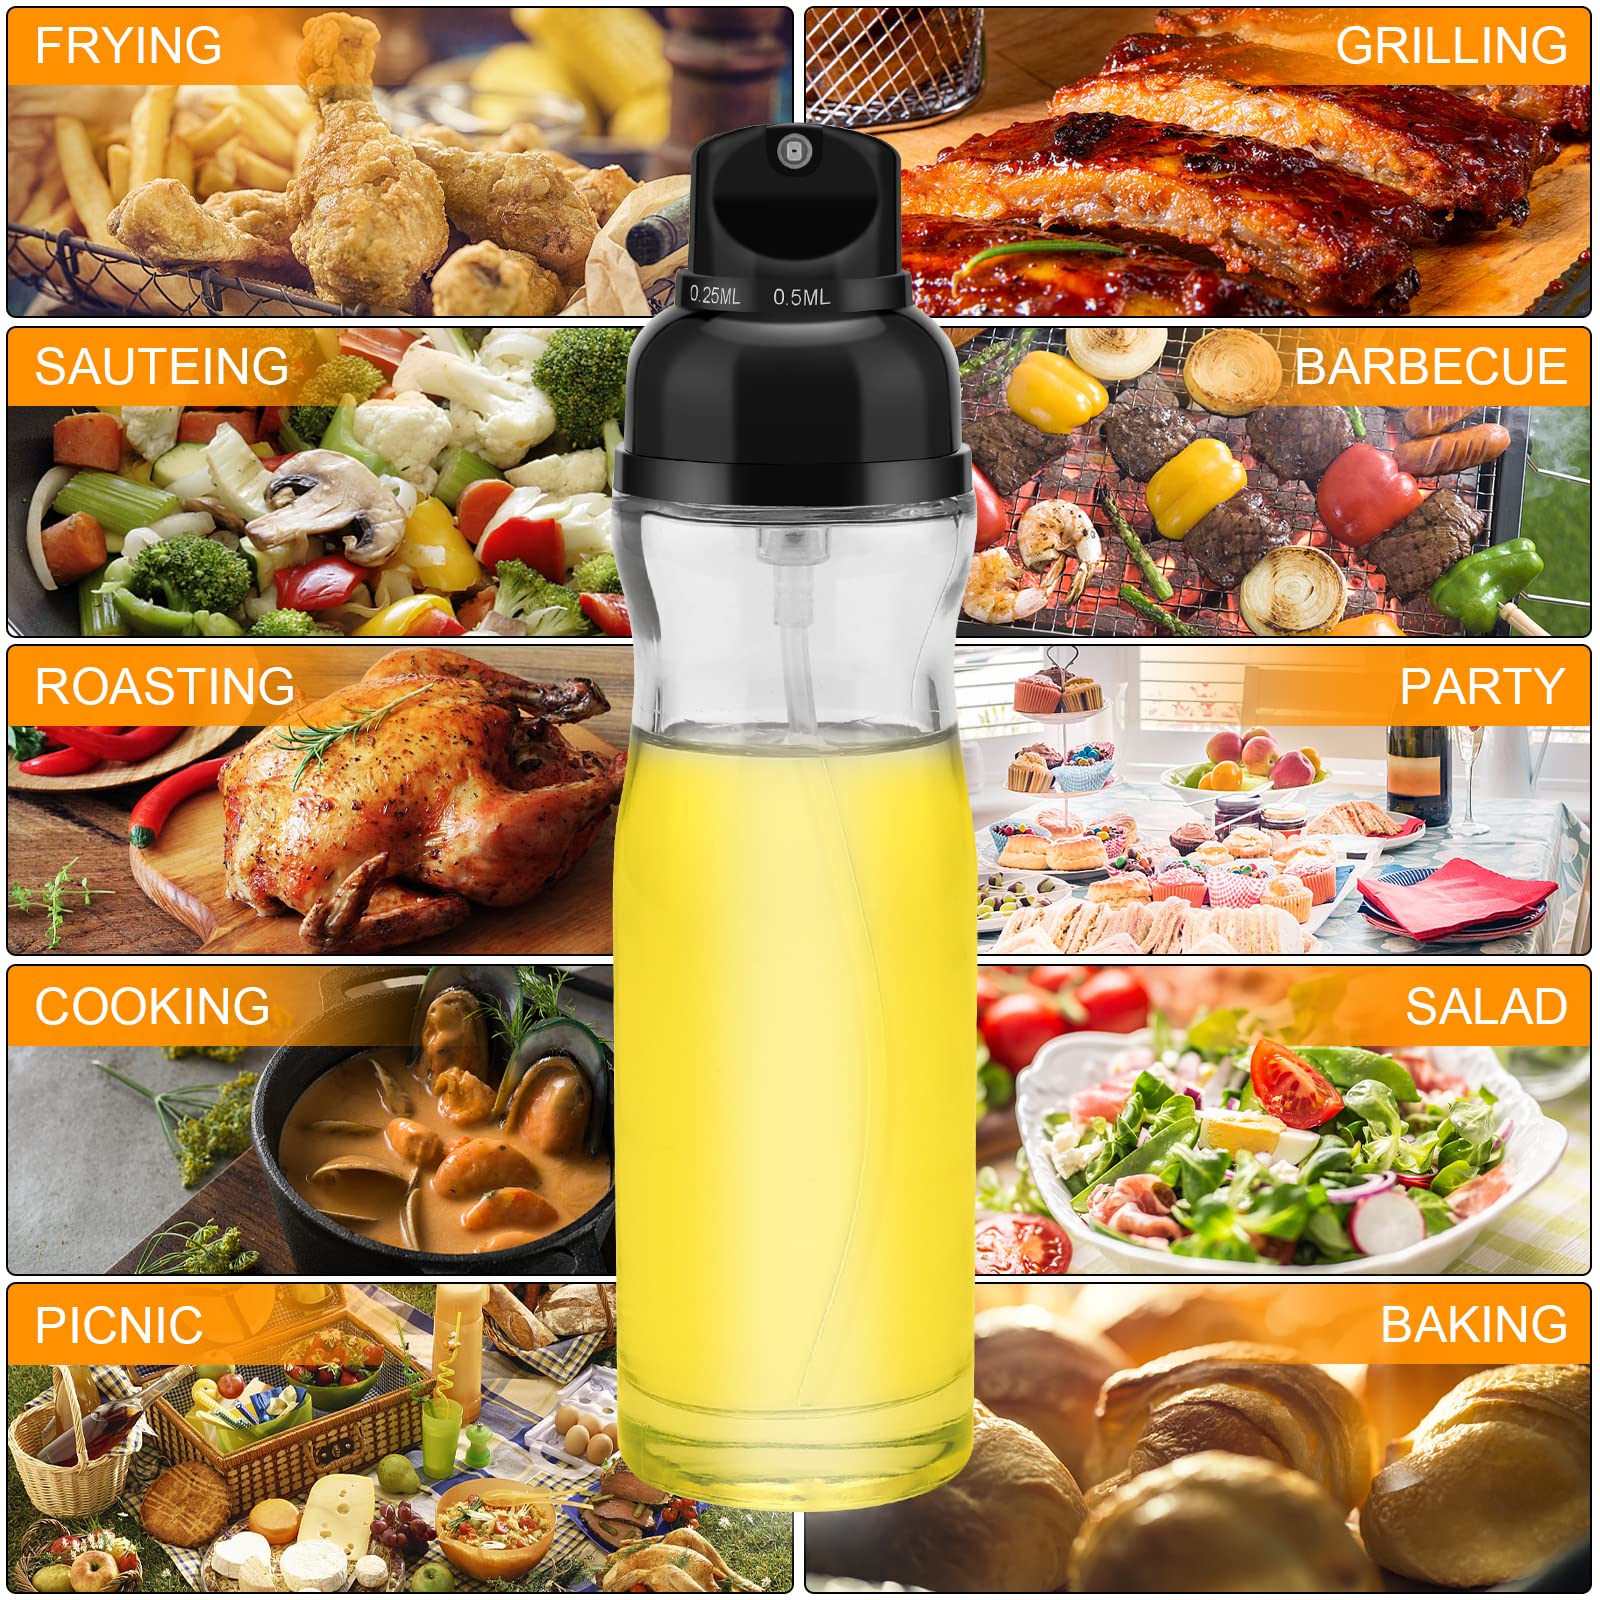 Honbuty 200ml Glass Olive Oil Sprayer for Cooking - Oil Dispenser Bottle Spray Mister - Refillable Food Grade Oil Vinegar Spritzer Spray